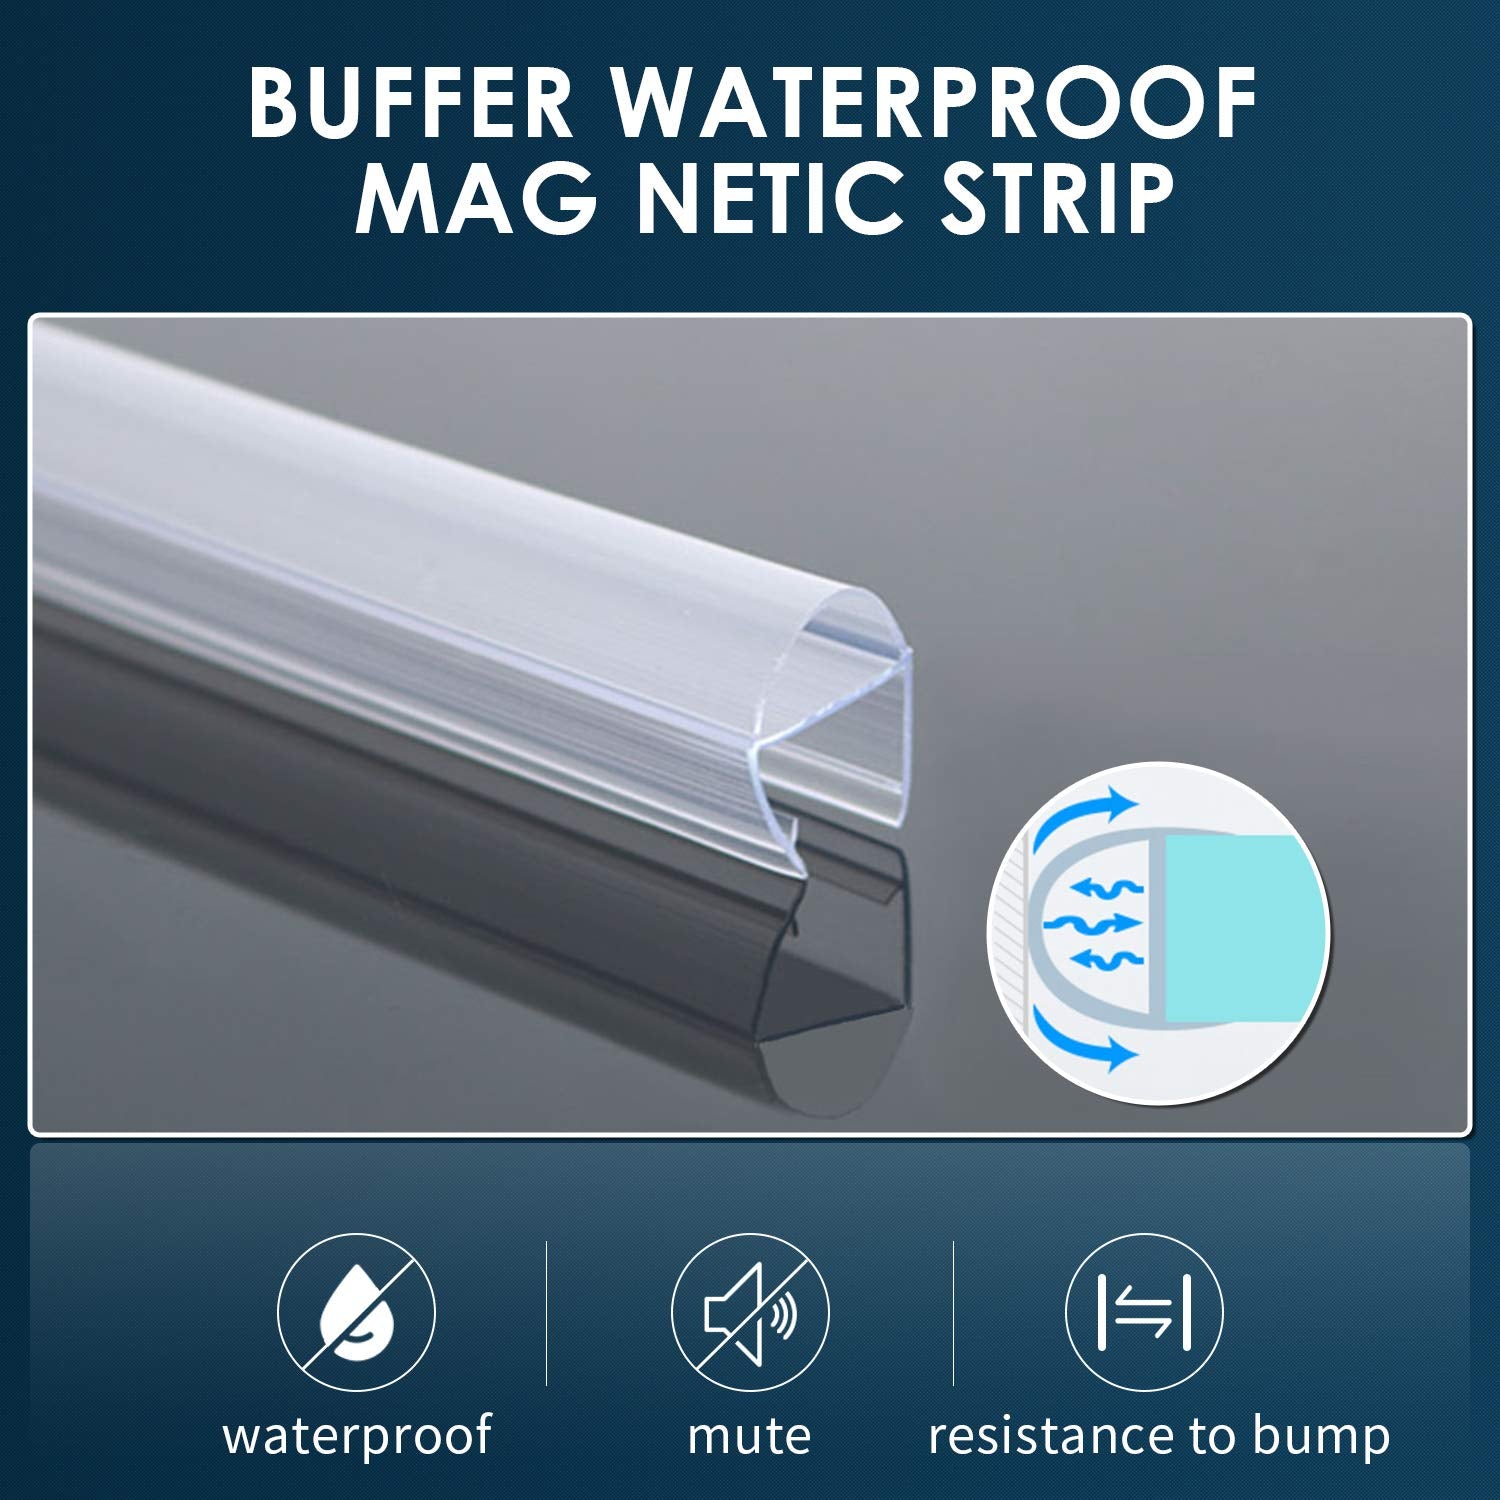 buffer waterproof mag netic strip